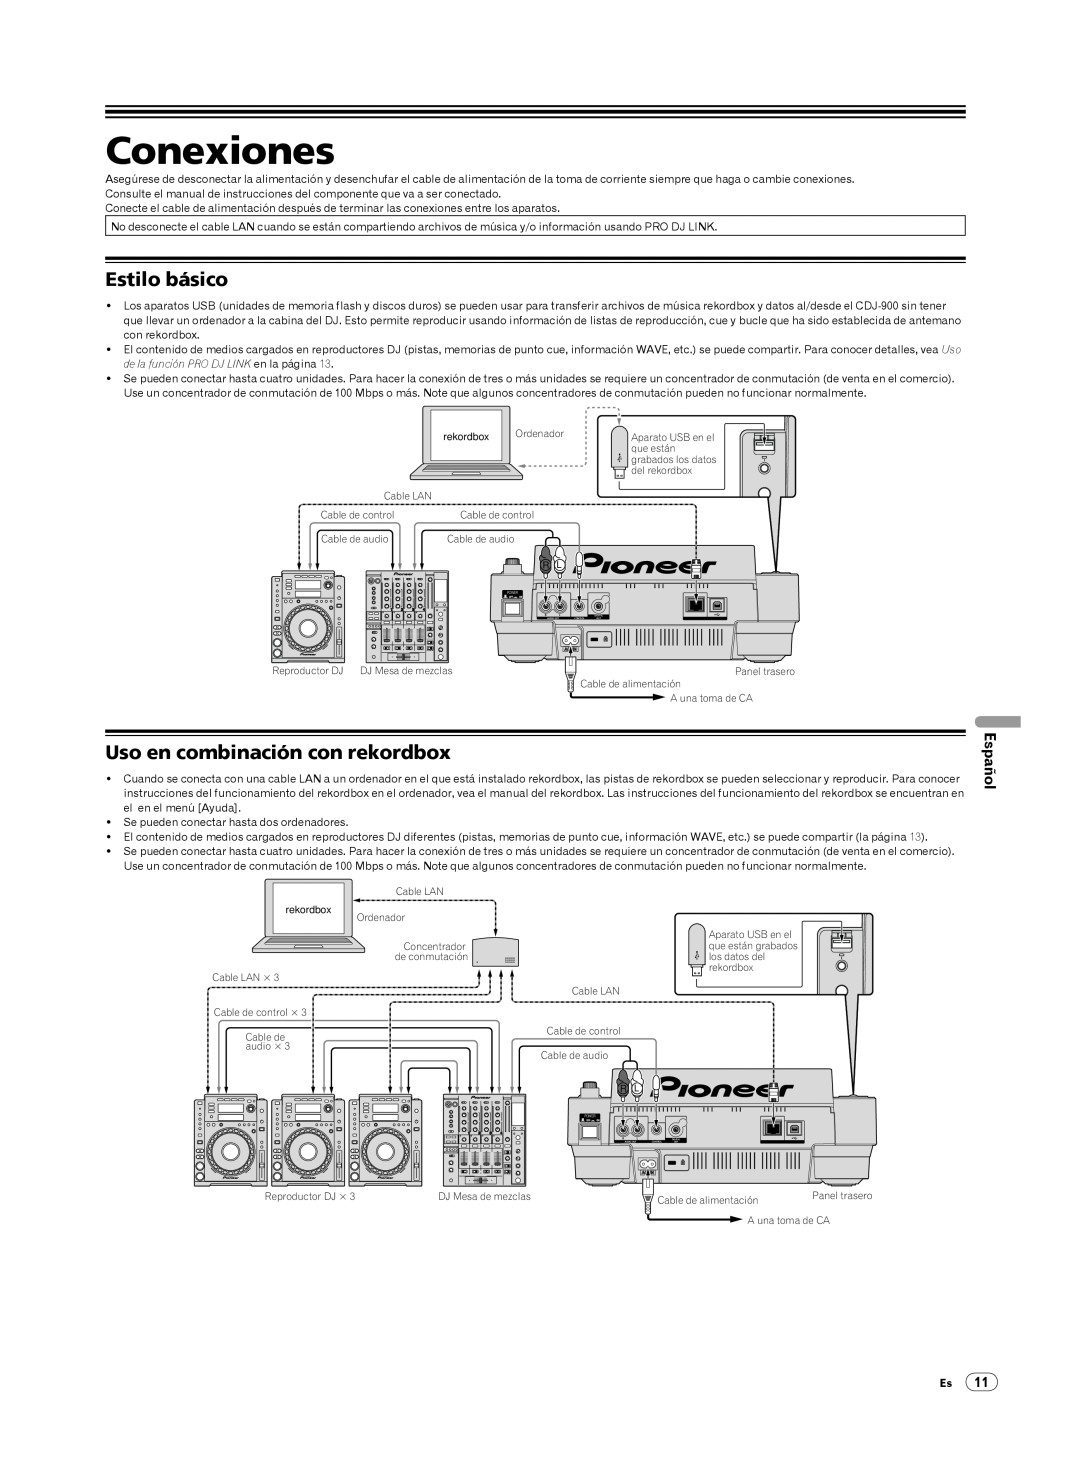 Pioneer Multi Player, CDJ-900 operating instructions Conexiones, Estilo básico, Uso en combinación con rekordbox, Español 